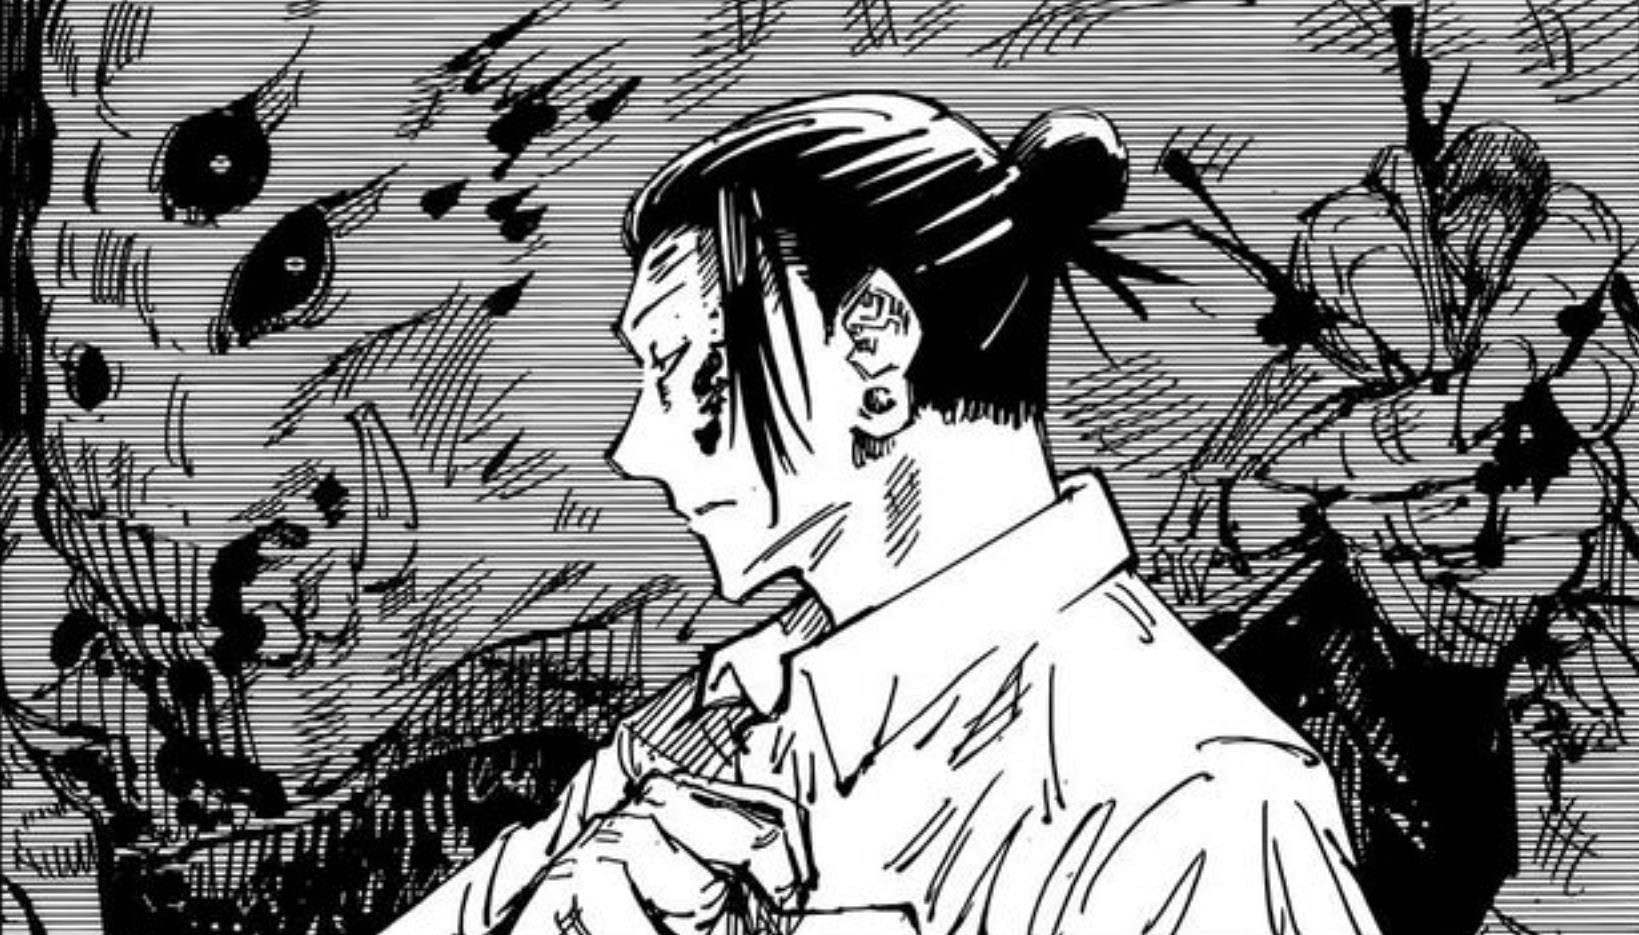 Suguru Geto as seen in Jujutsu Kaisen chapter 77 (Image via Shueisha)